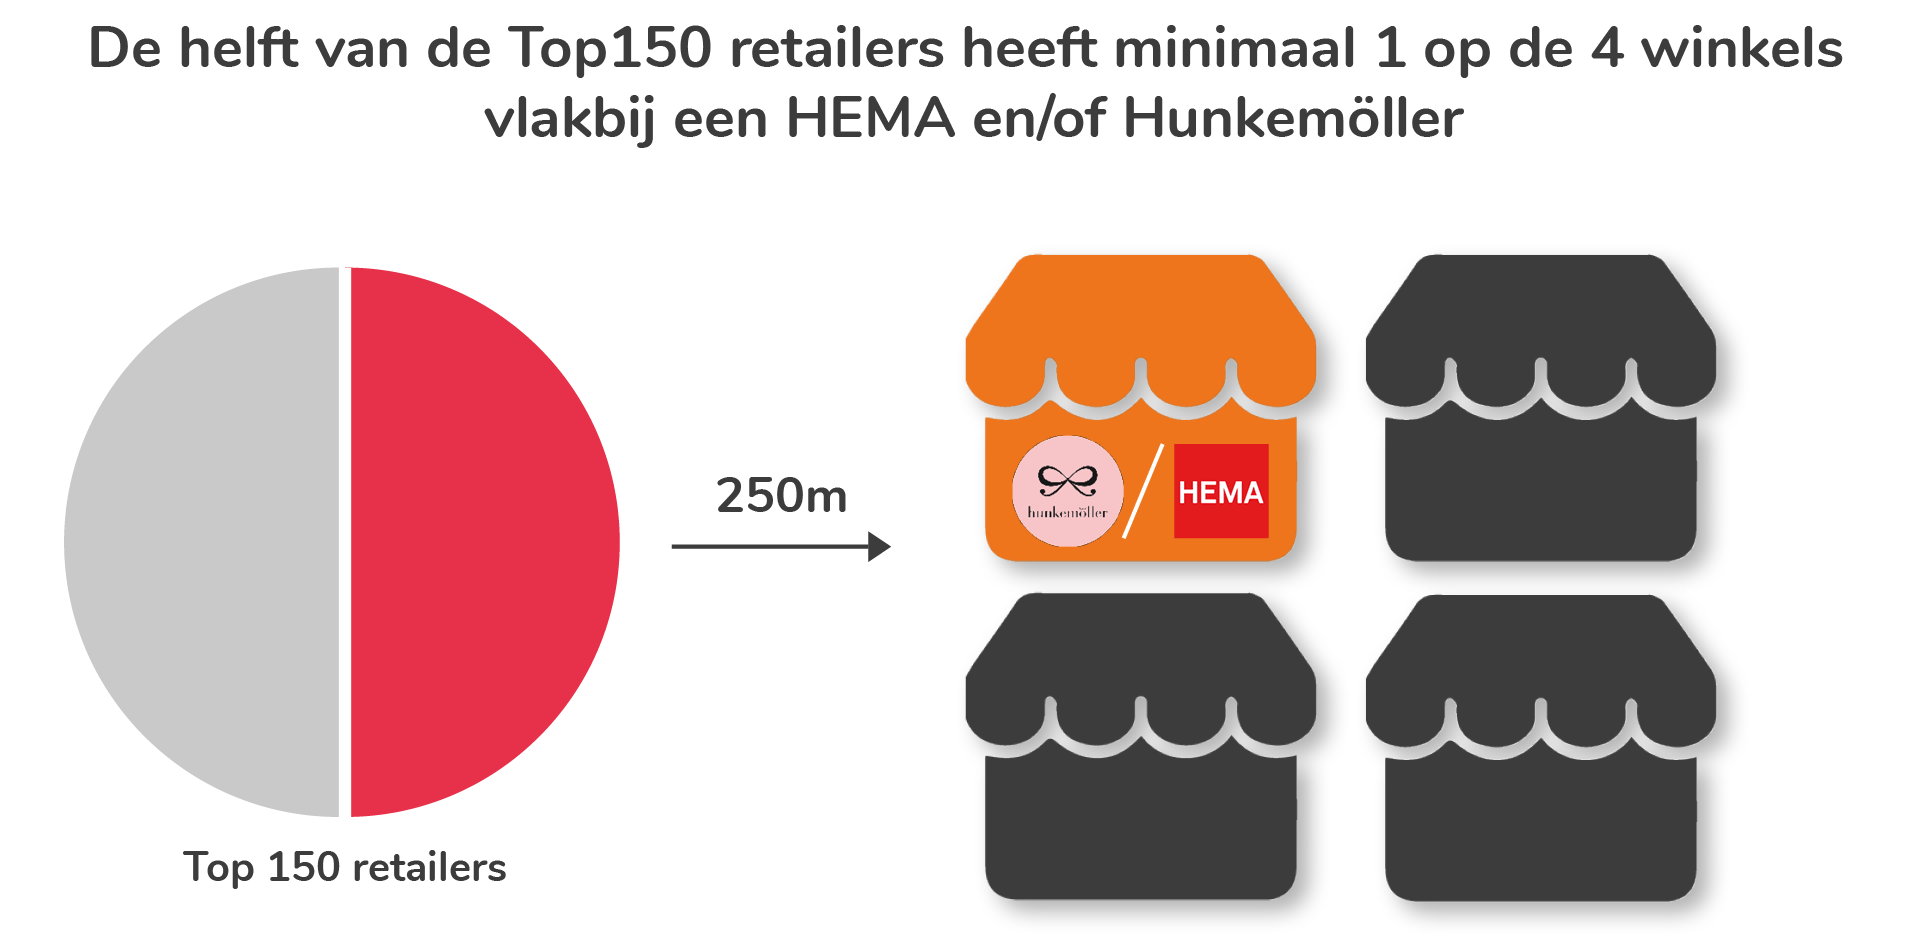 De helft van de top 150 retailers heeft minimaal  1 op 4 winkels vlakbij een HEMA en/of Hunkemöller